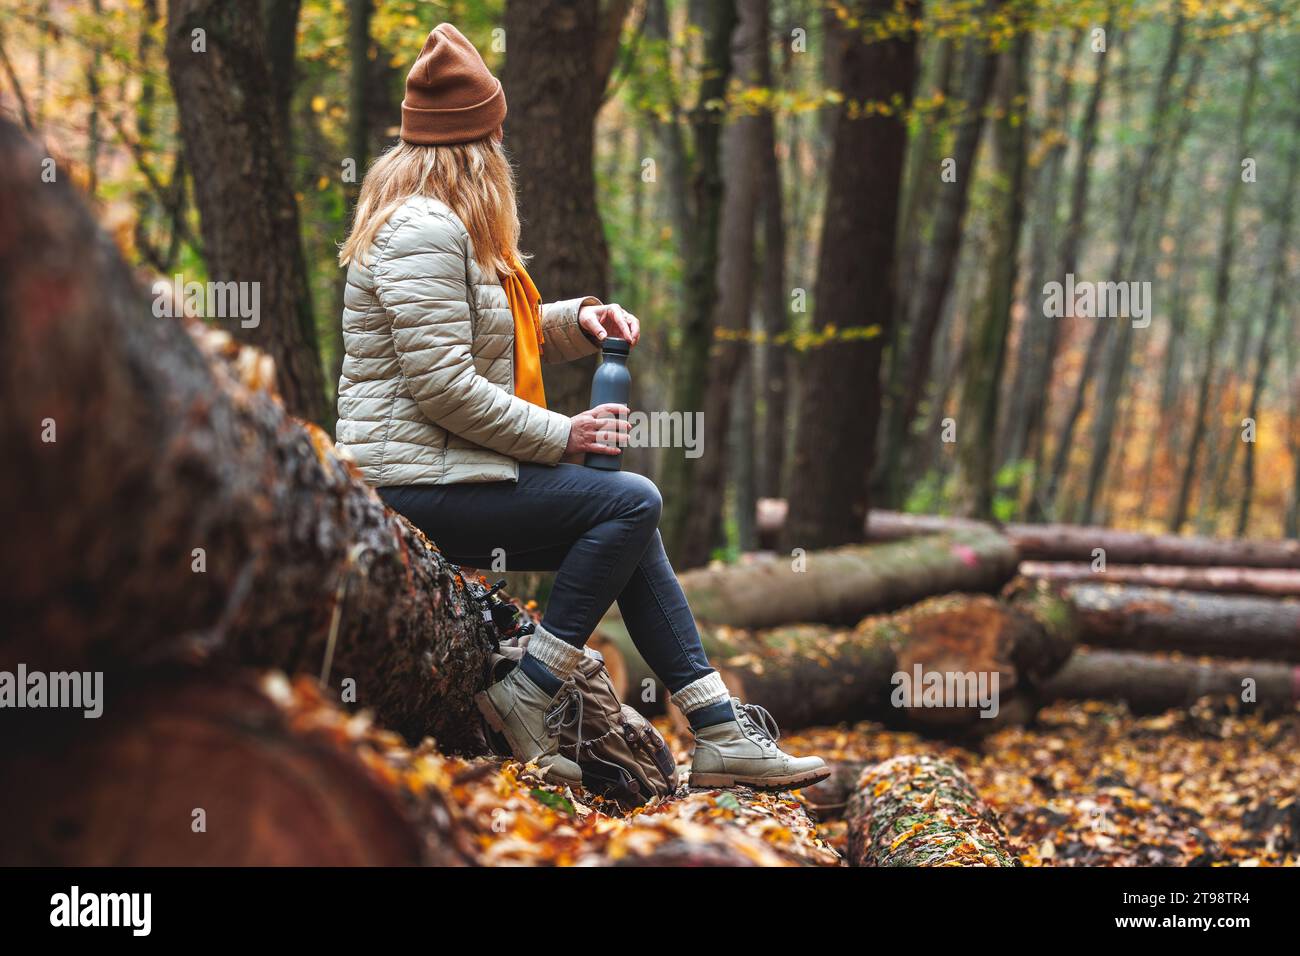 Ristoro durante le escursioni nella natura. Donna con thermos che riposa sul tronco nella foresta autunnale Foto Stock